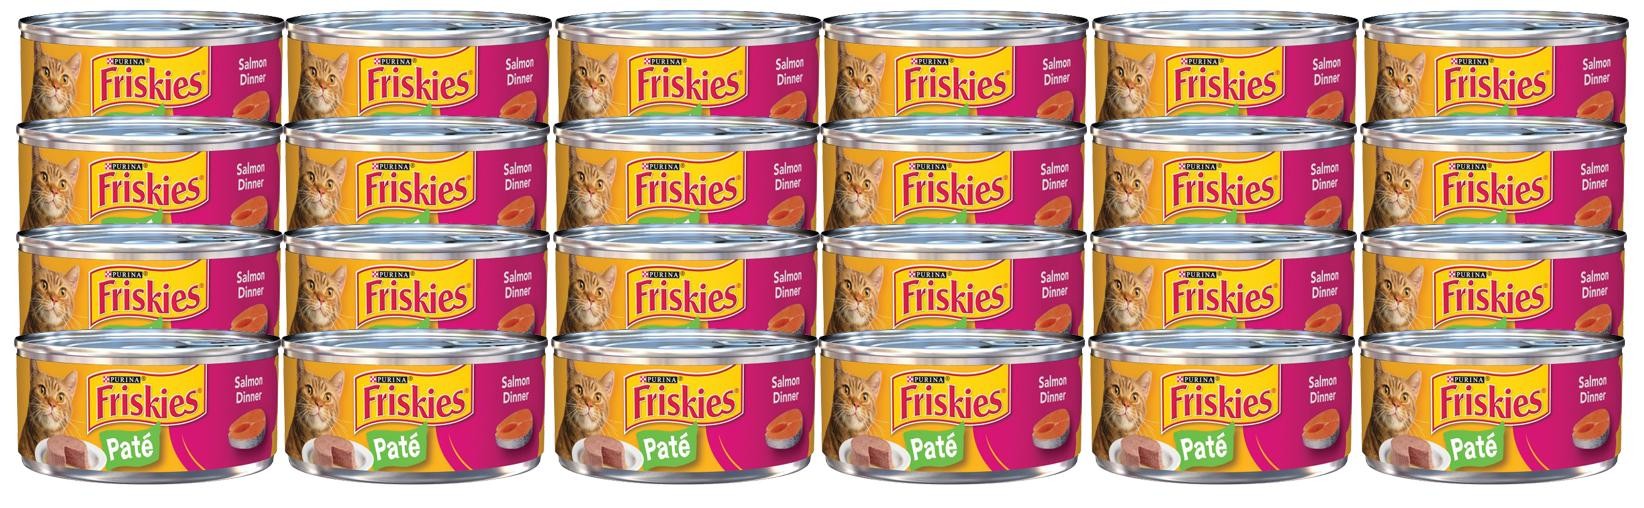 Purina Friskies Classic Pate Cat Food, 5.5 Oz